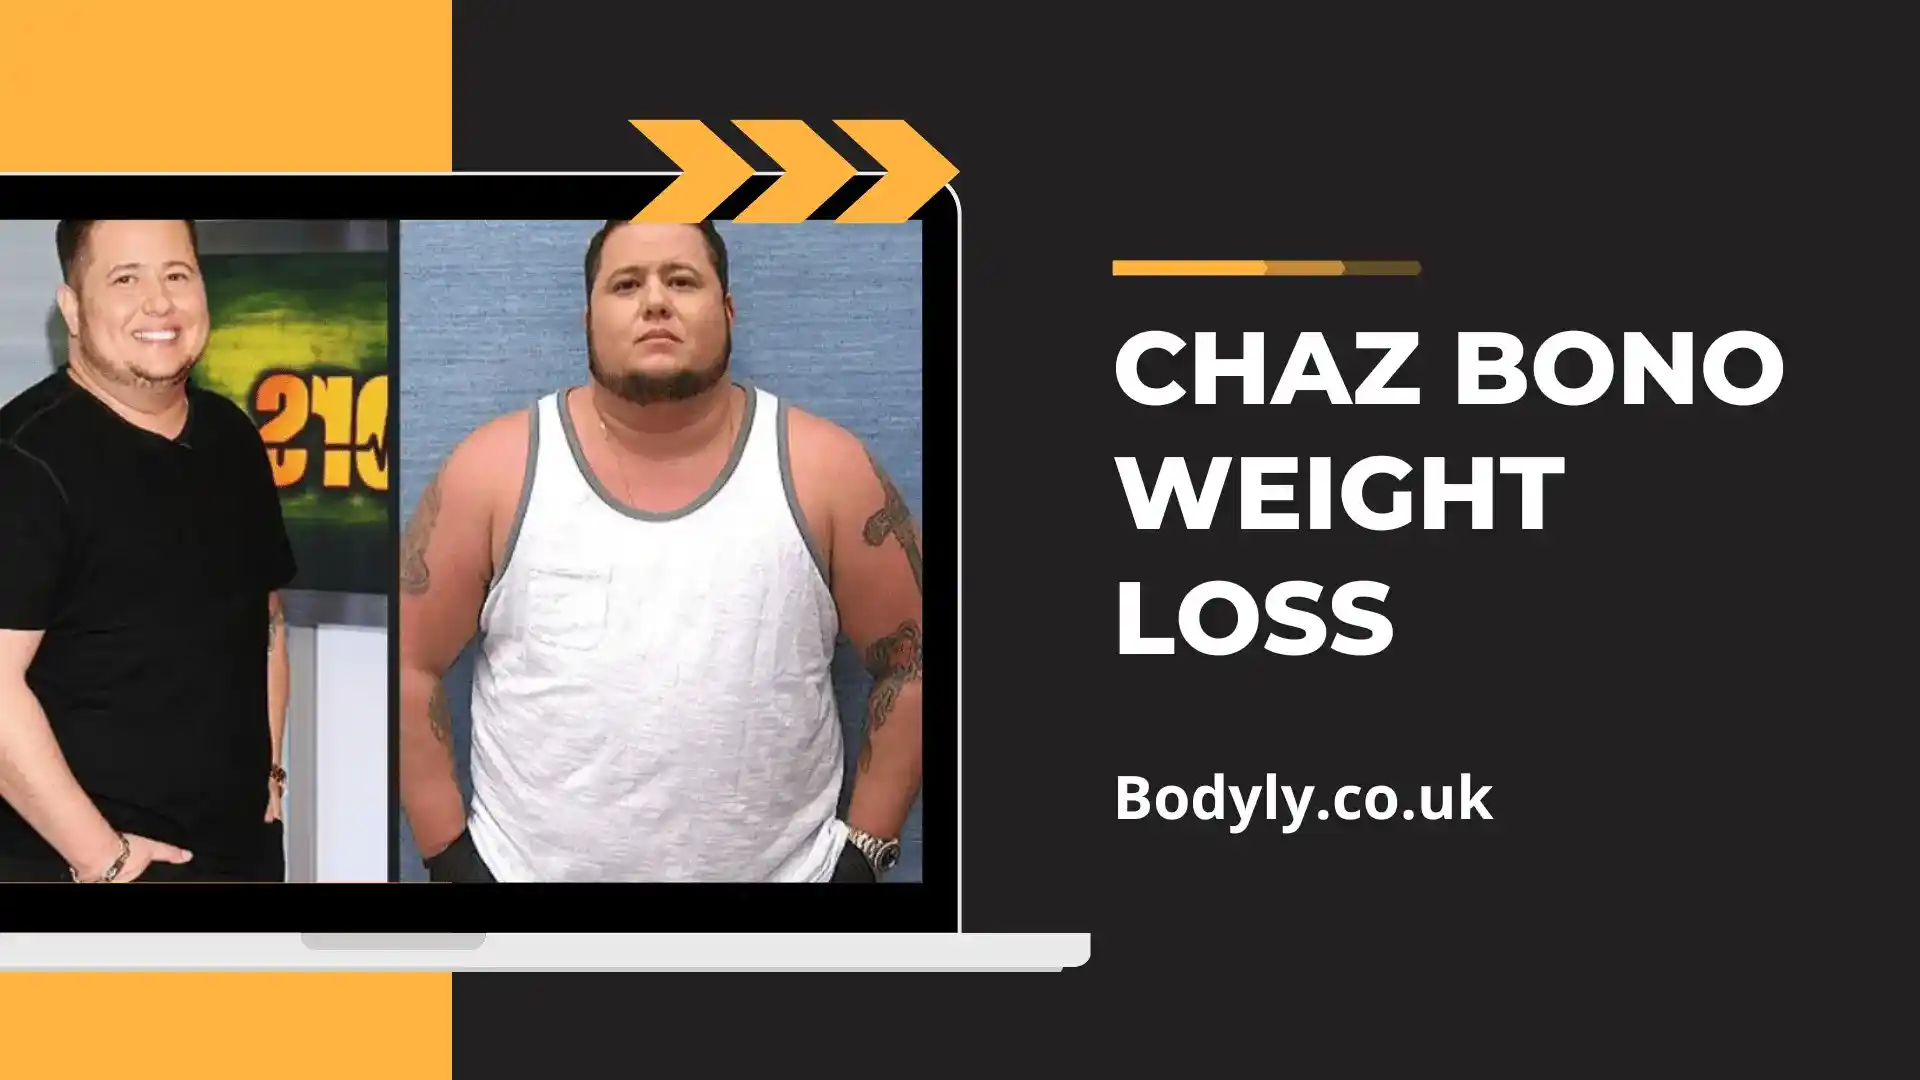 Chaz Bono weight loss